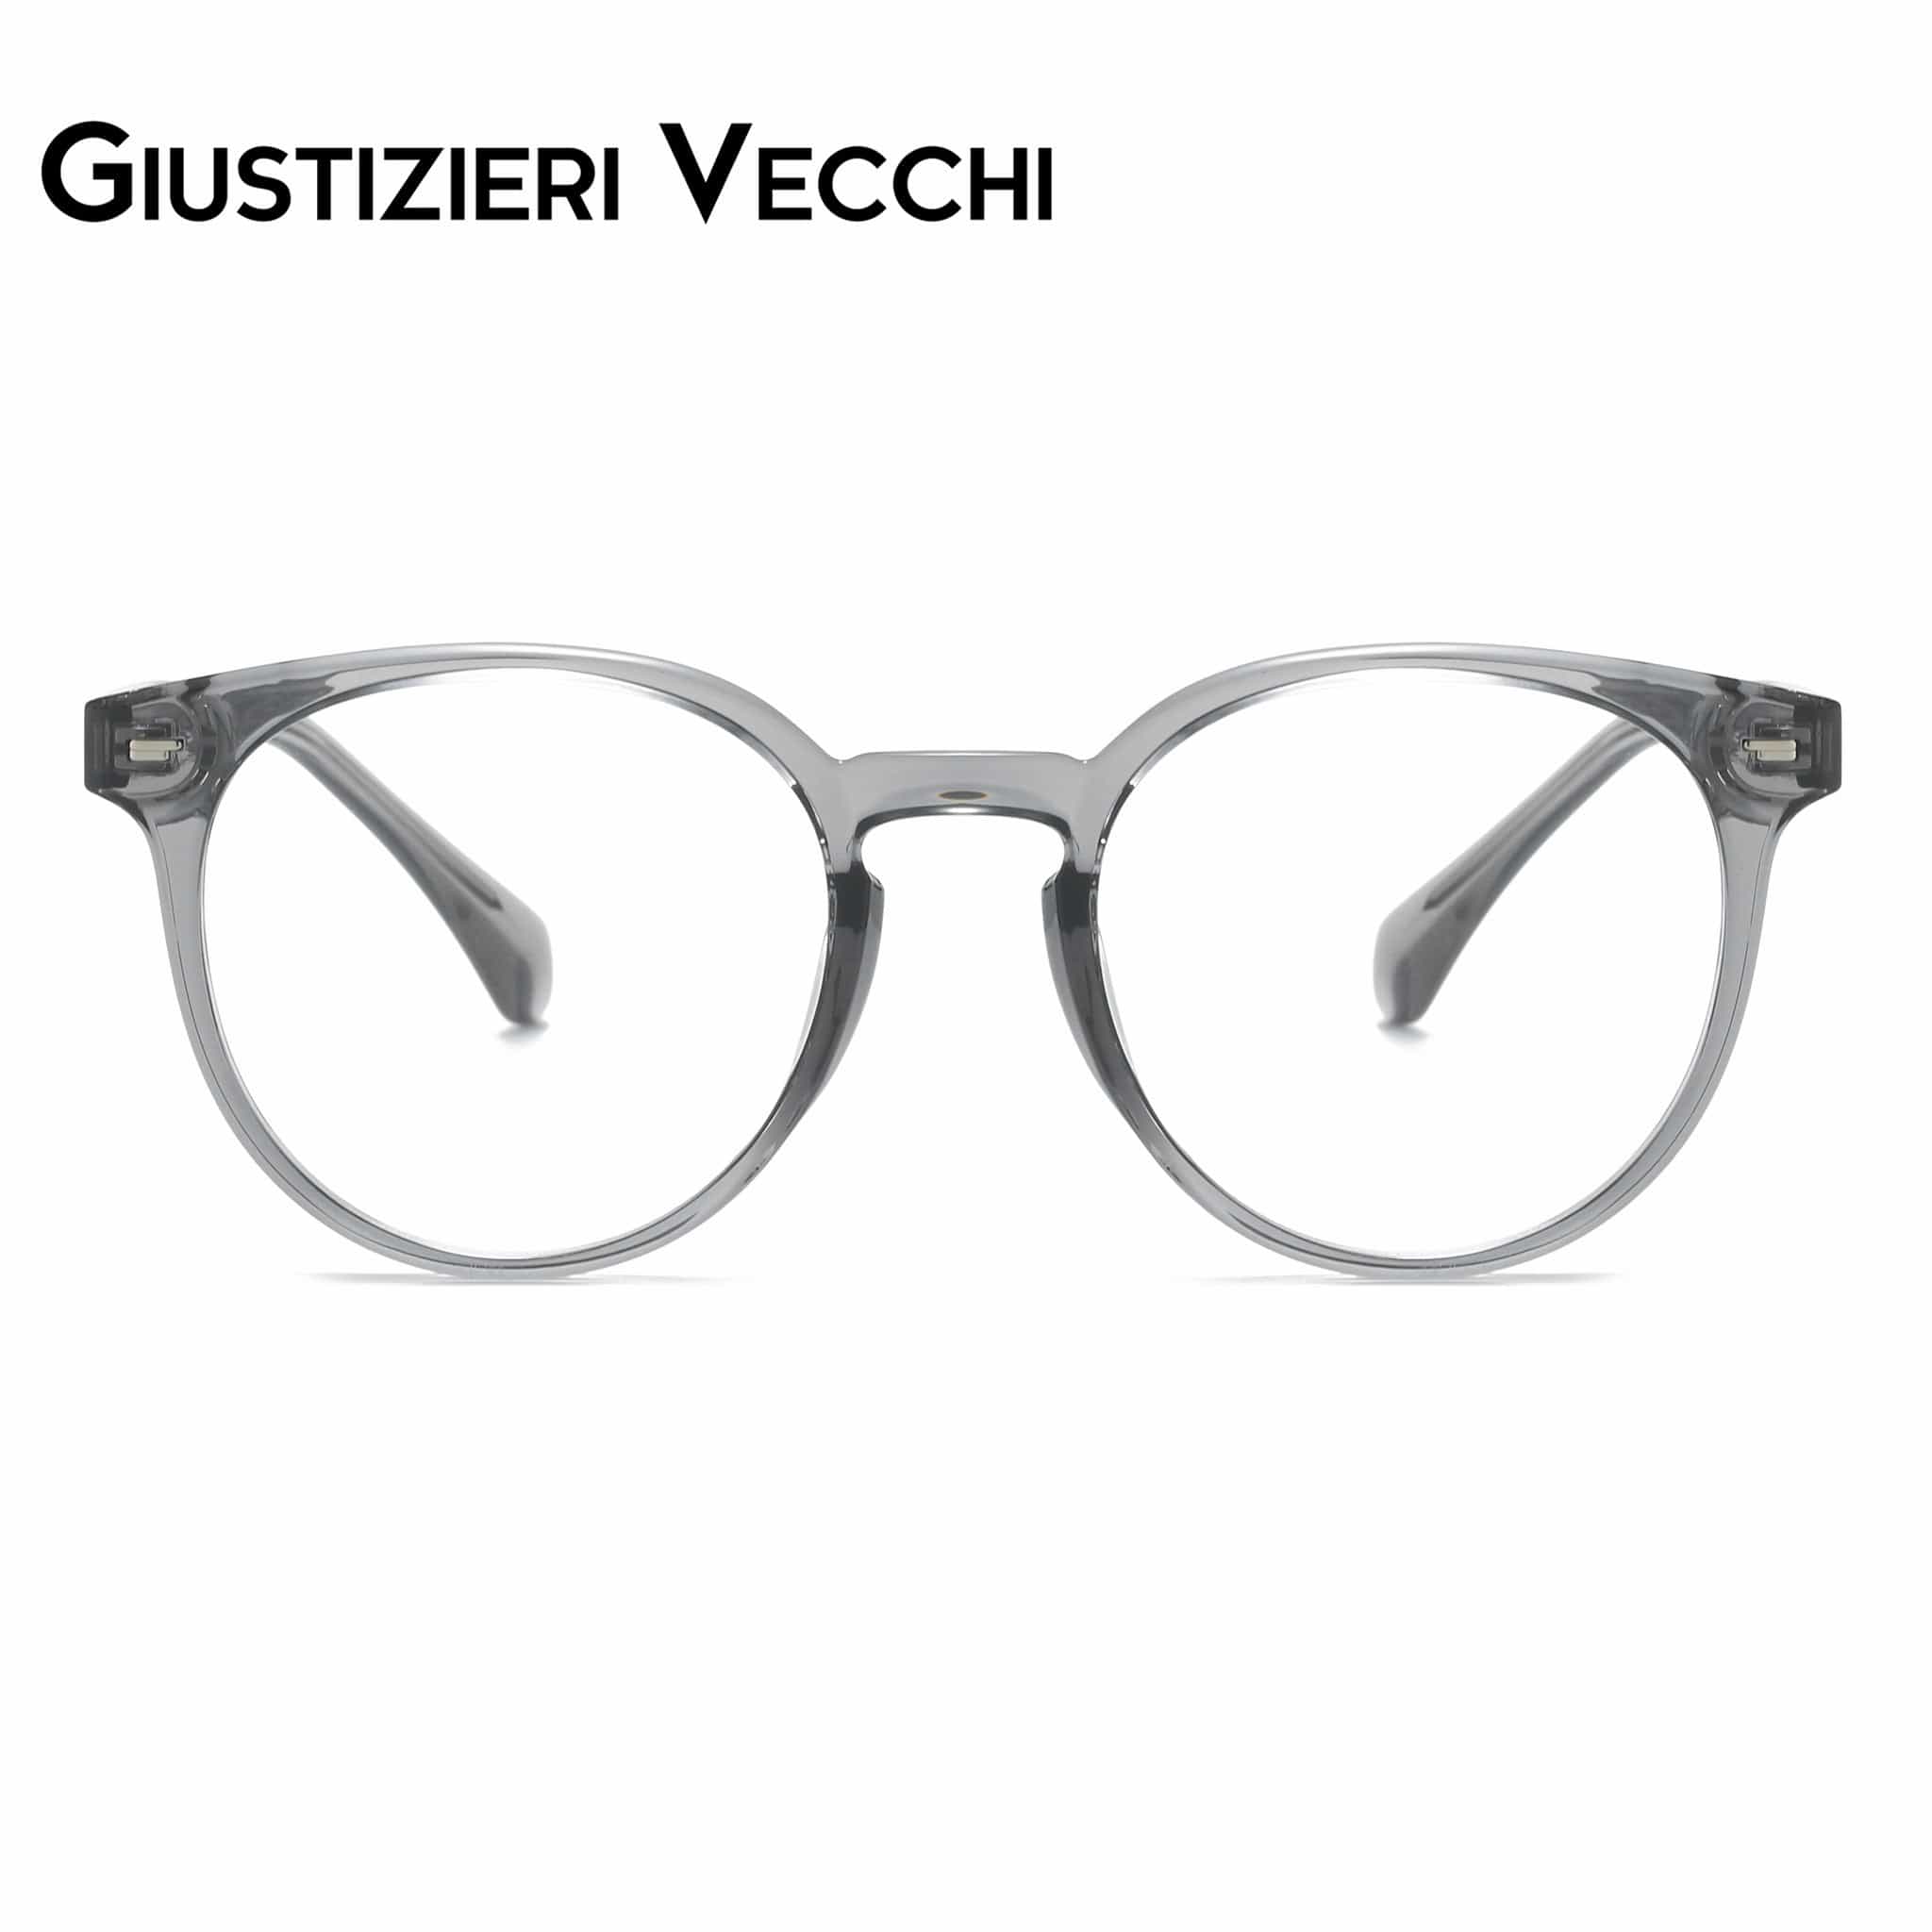 GIUSTIZIERI VECCHI Eyeglasses Small / Sea Glass Grey NeonBloom Duo